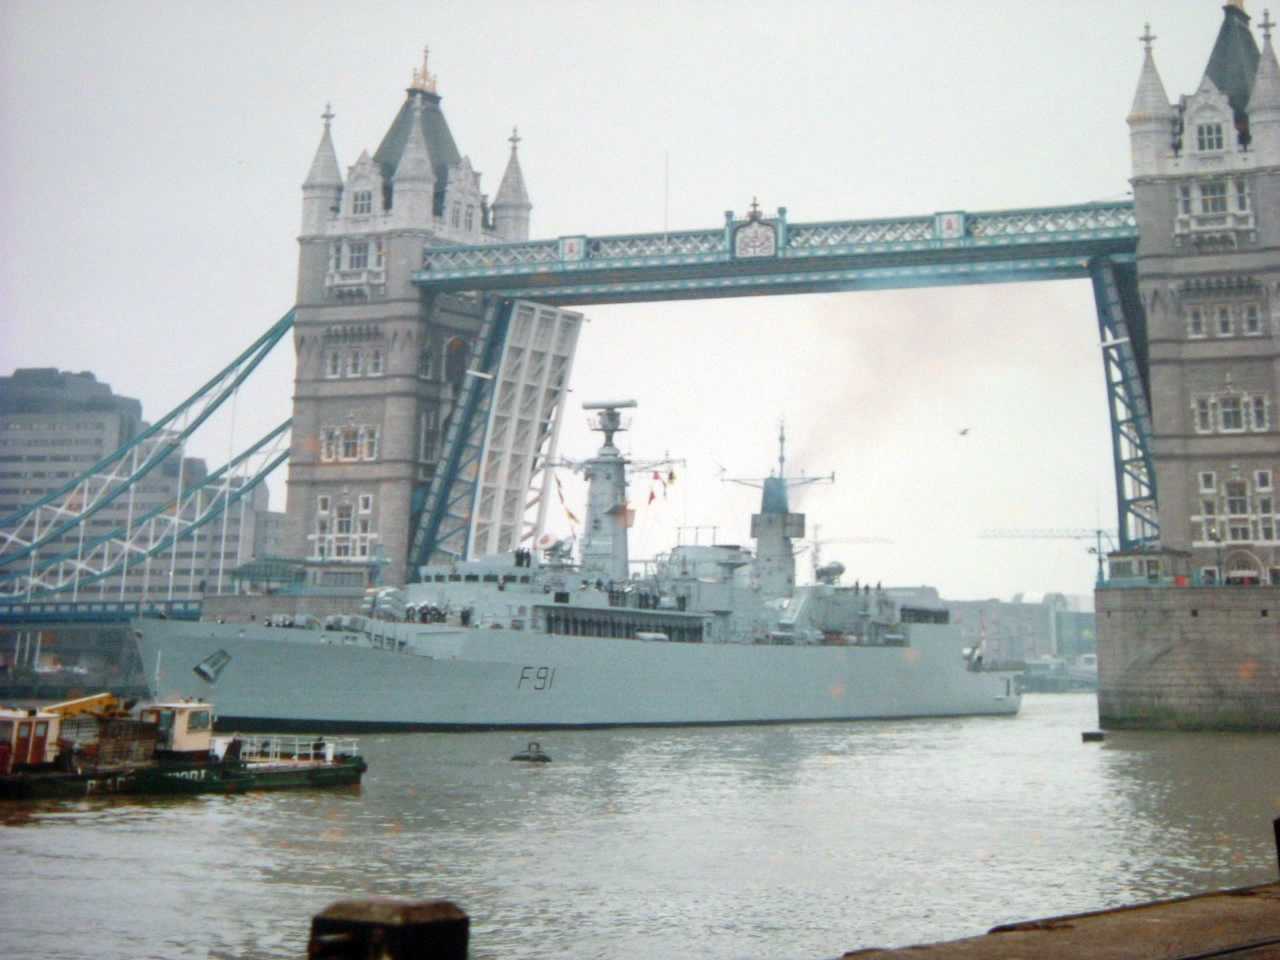 HMS Brazen going under the Tower Bridge in London